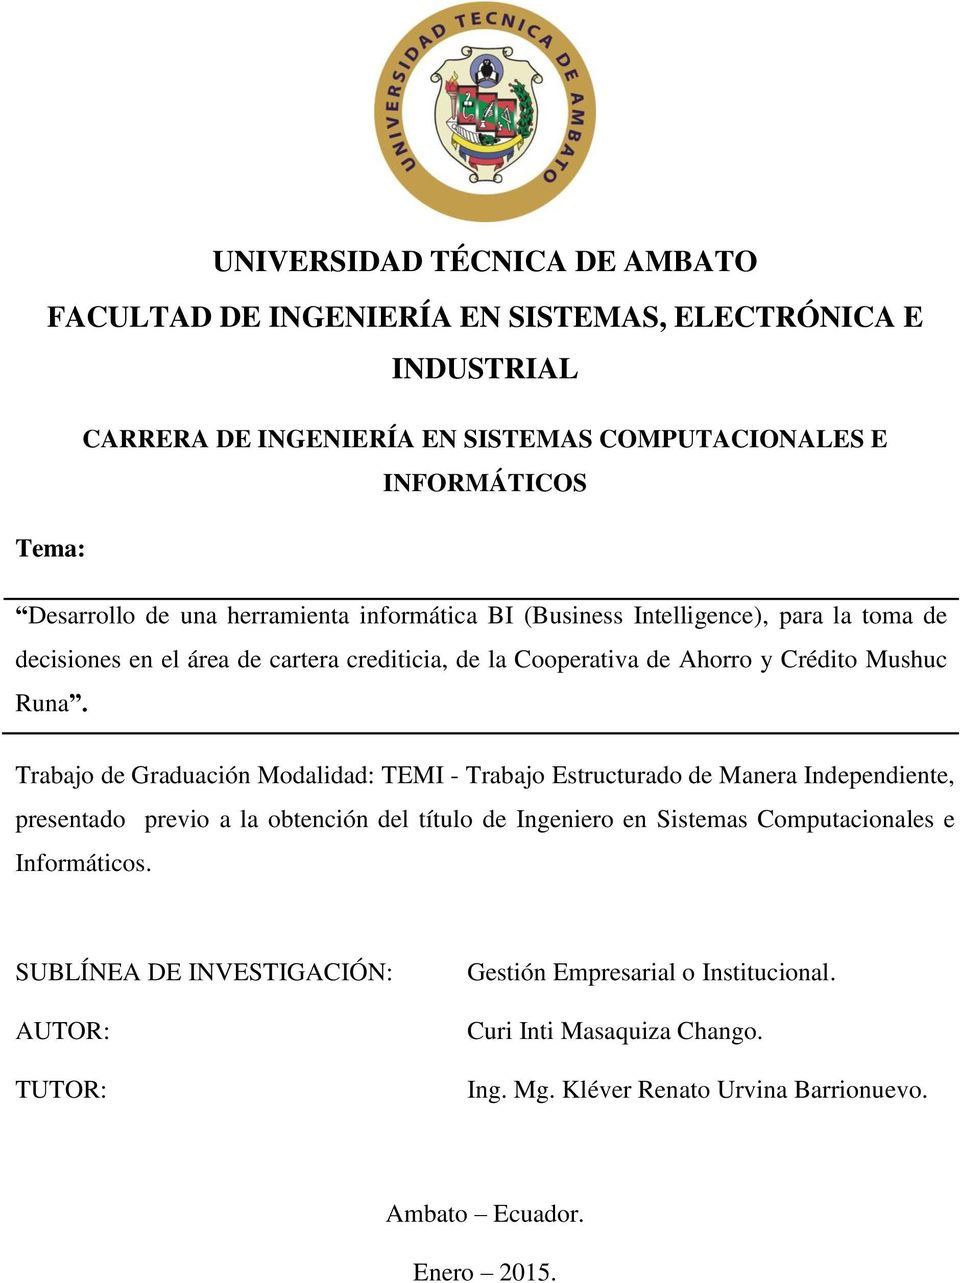 Trabajo de Graduación Modalidad: TEMI - Trabajo Estructurado de Manera Independiente, presentado previo a la obtención del título de Ingeniero en Sistemas Computacionales e